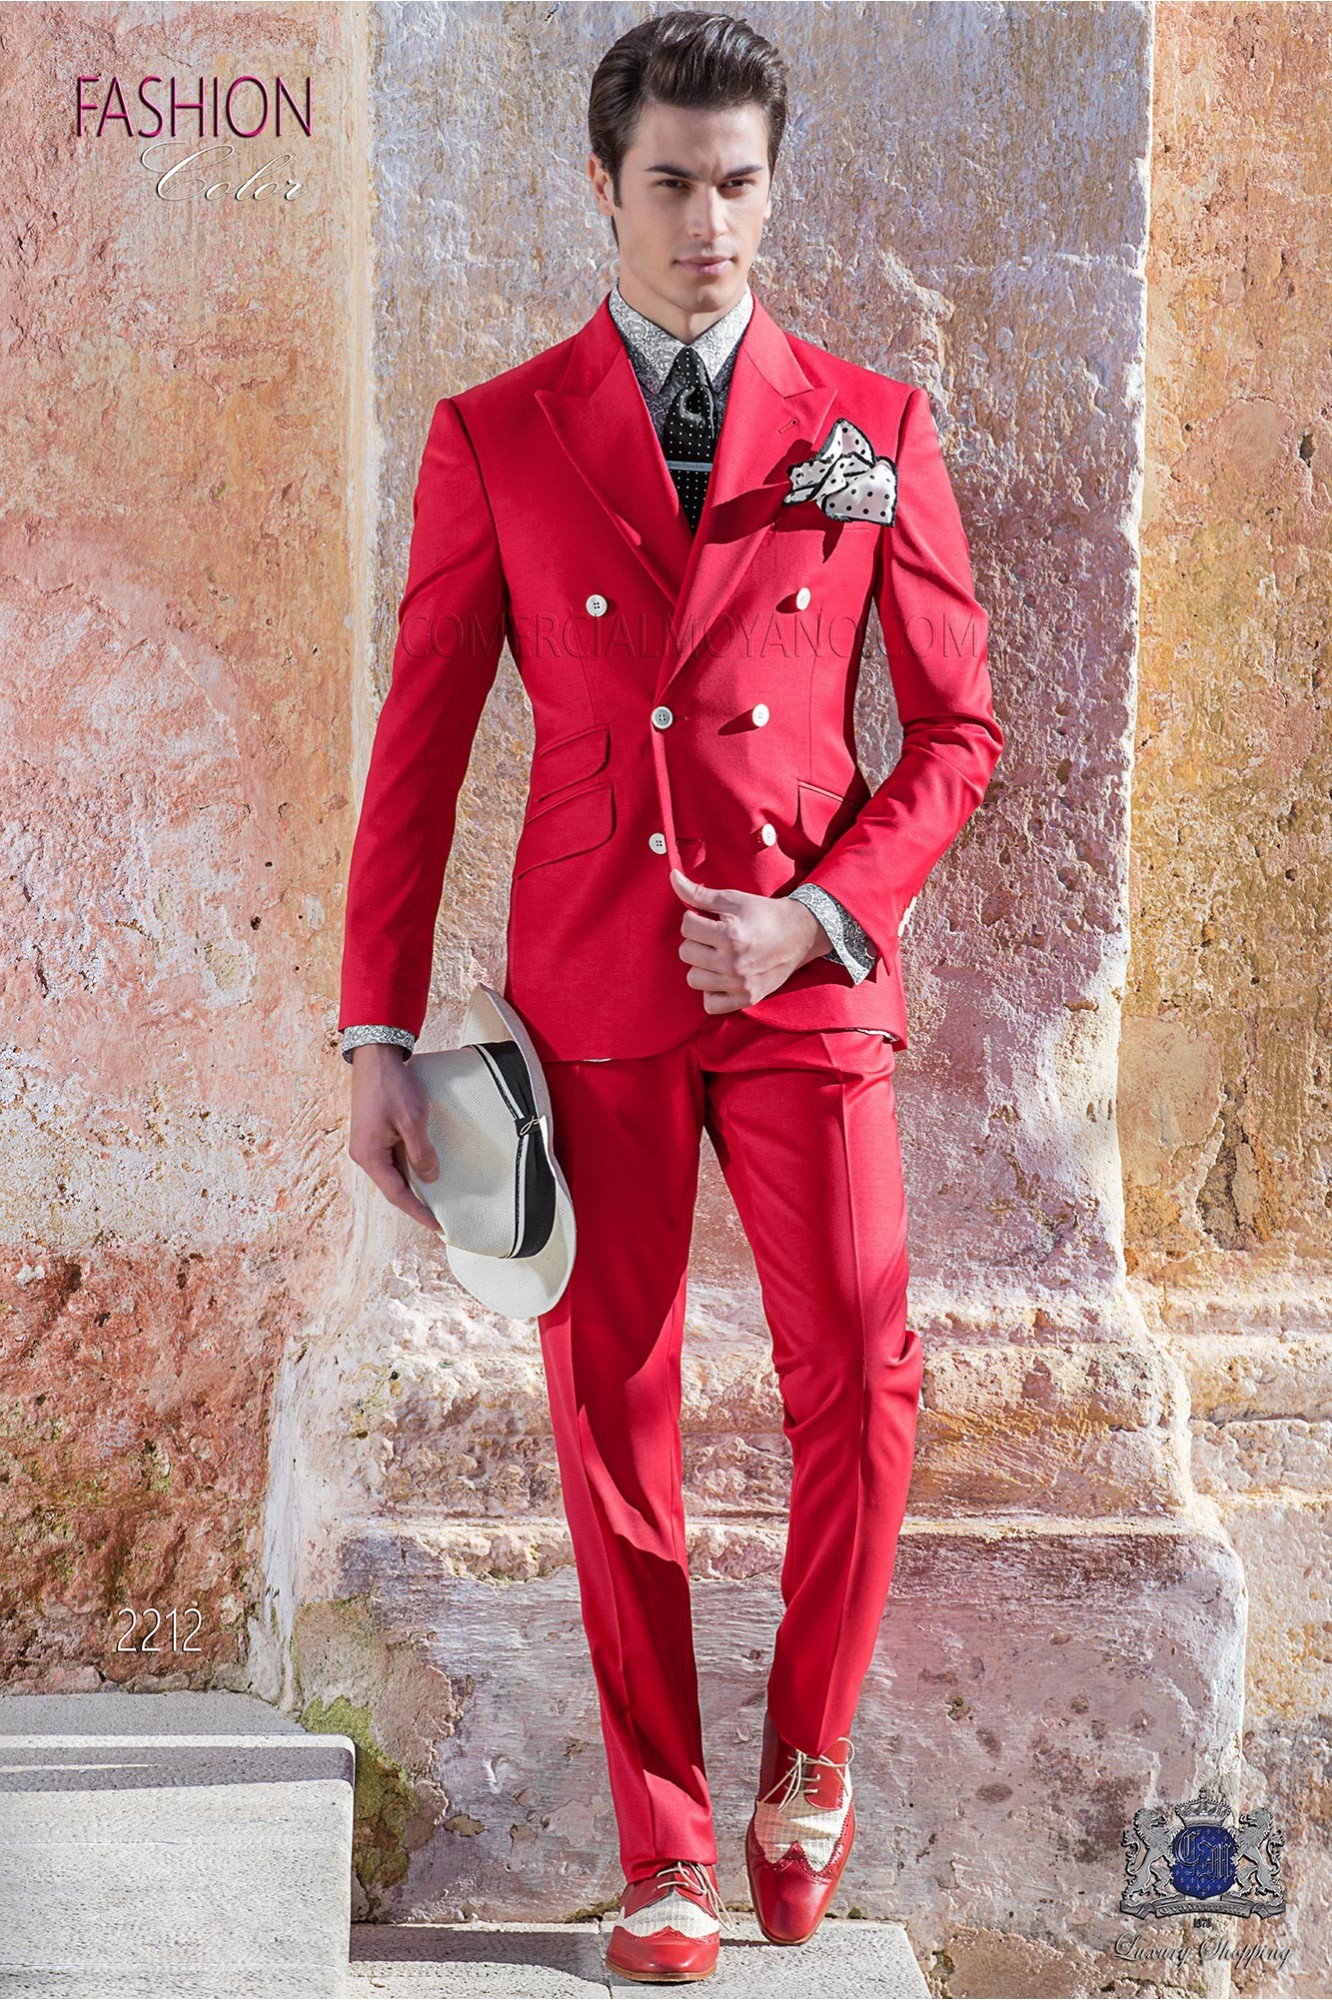 Traje cruzado New Performance Rojo modelo: 2212 Mario Moyano colección Hipster